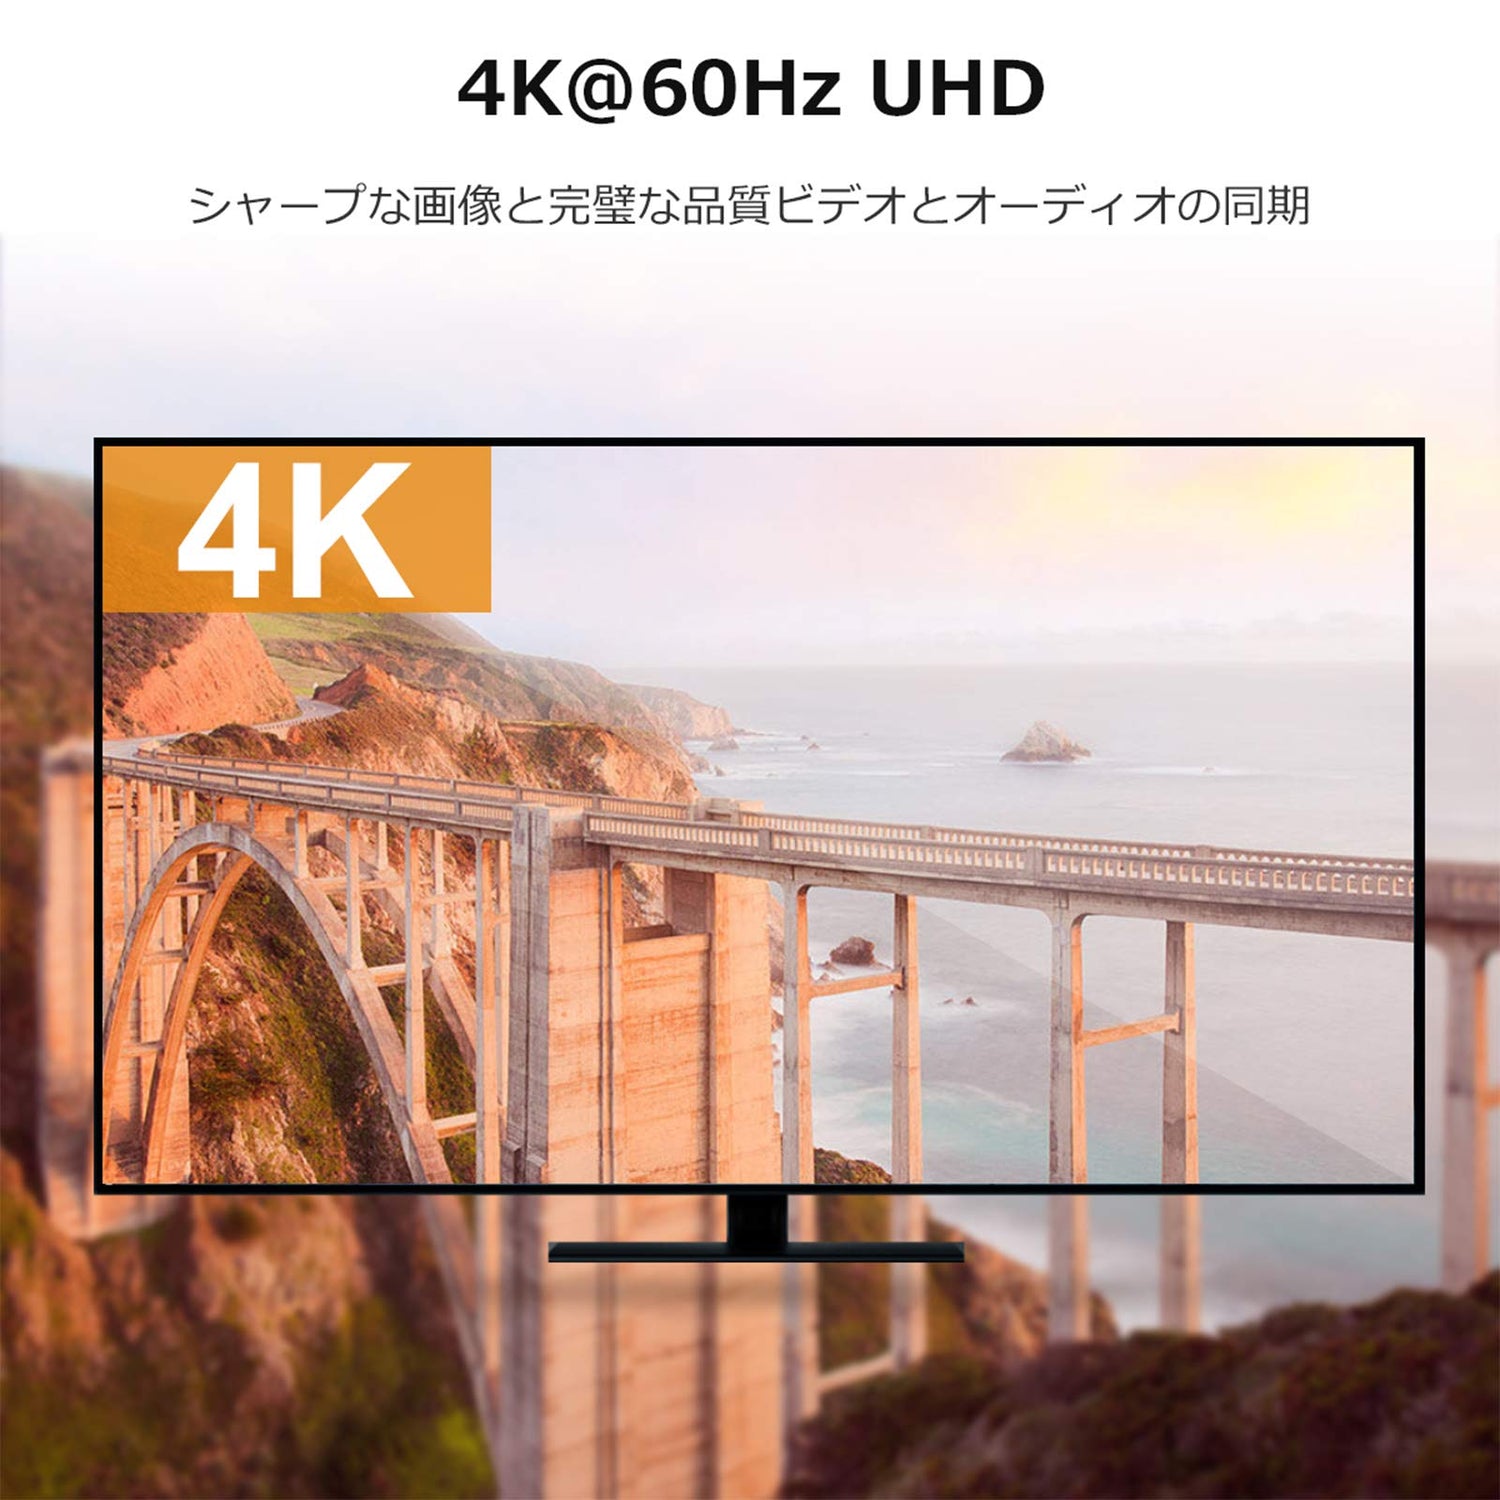 HDMI分配器 1入力2分配 4K60Hz 4:4:4 CEC 手動 切り替え EDID認識対応